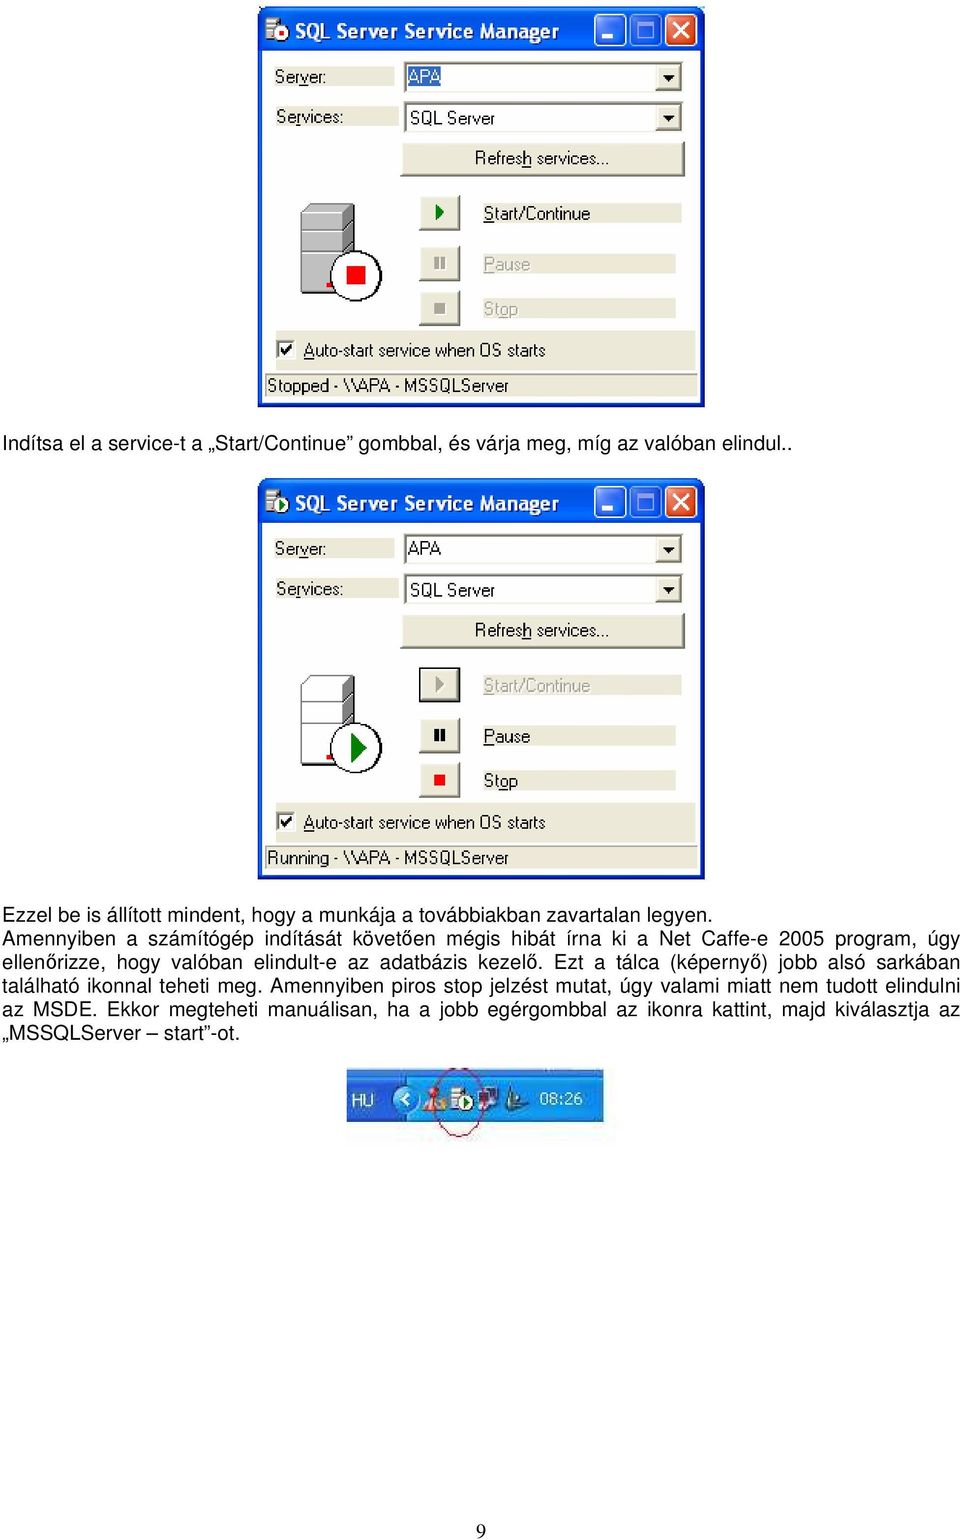 Amennyiben a számítógép indítását követően mégis hibát írna ki a Net Caffe-e 2005 program, úgy ellenőrizze, hogy valóban elindult-e az adatbázis